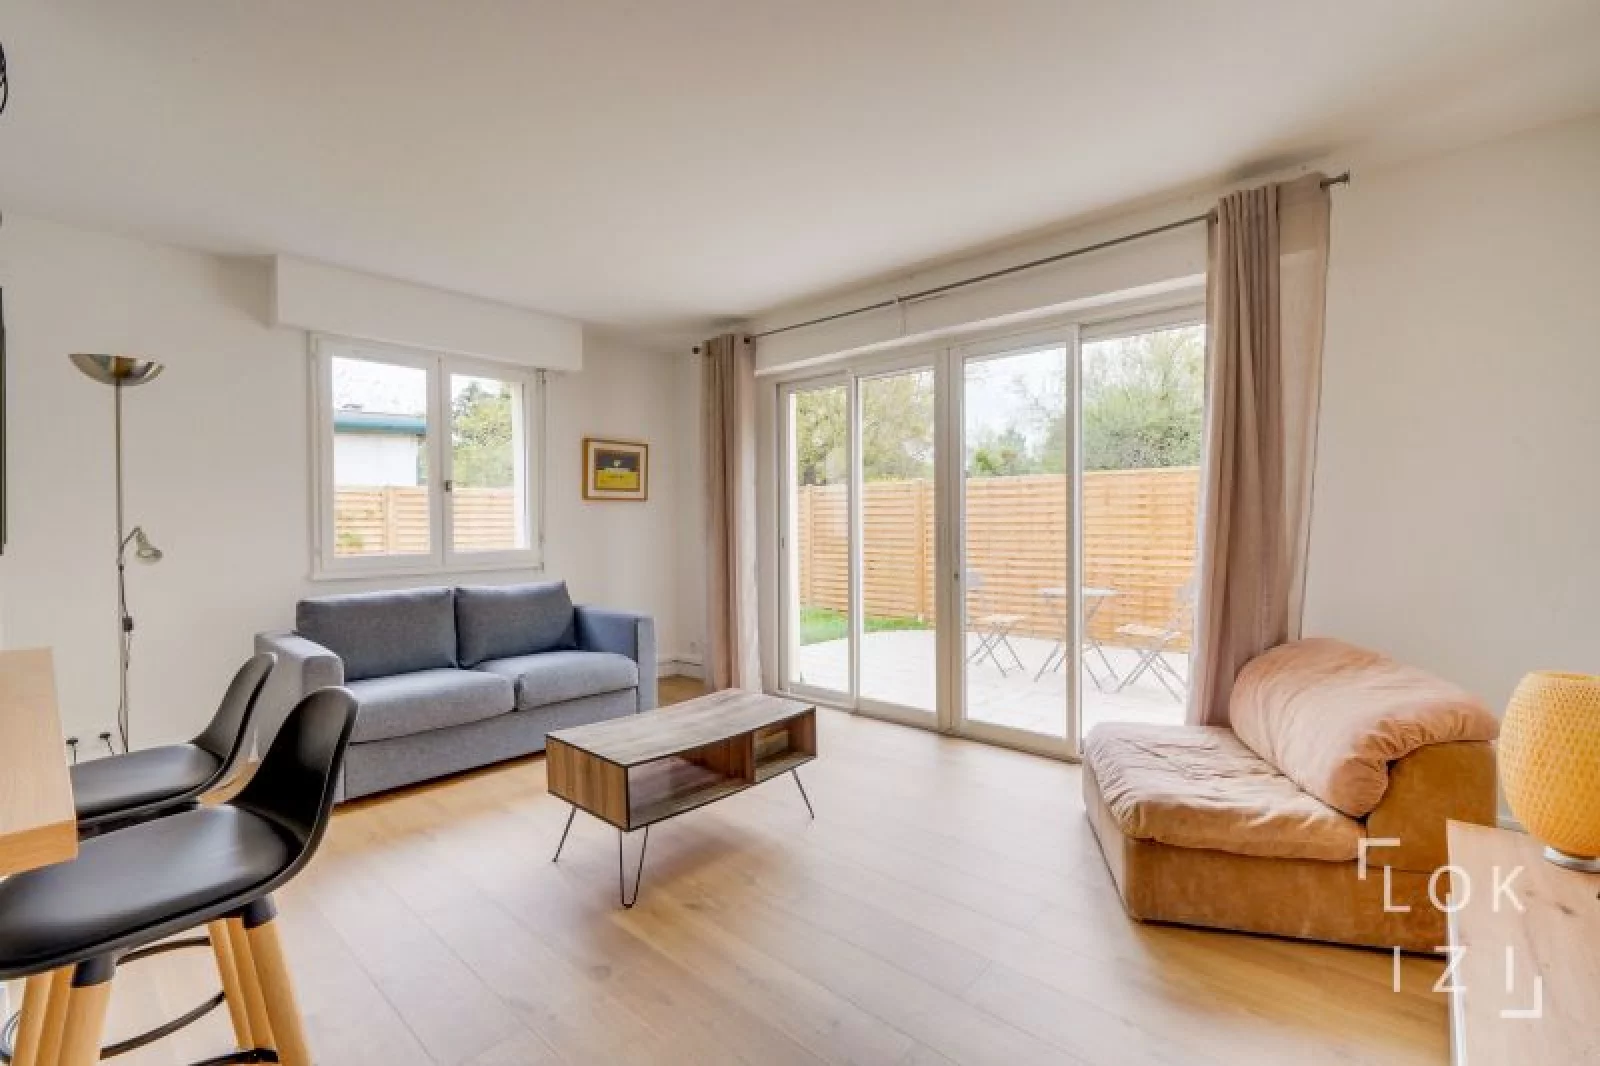 Location appartement meublé T2 de 49m² avec jardin (Bordeaux - Caudéran)